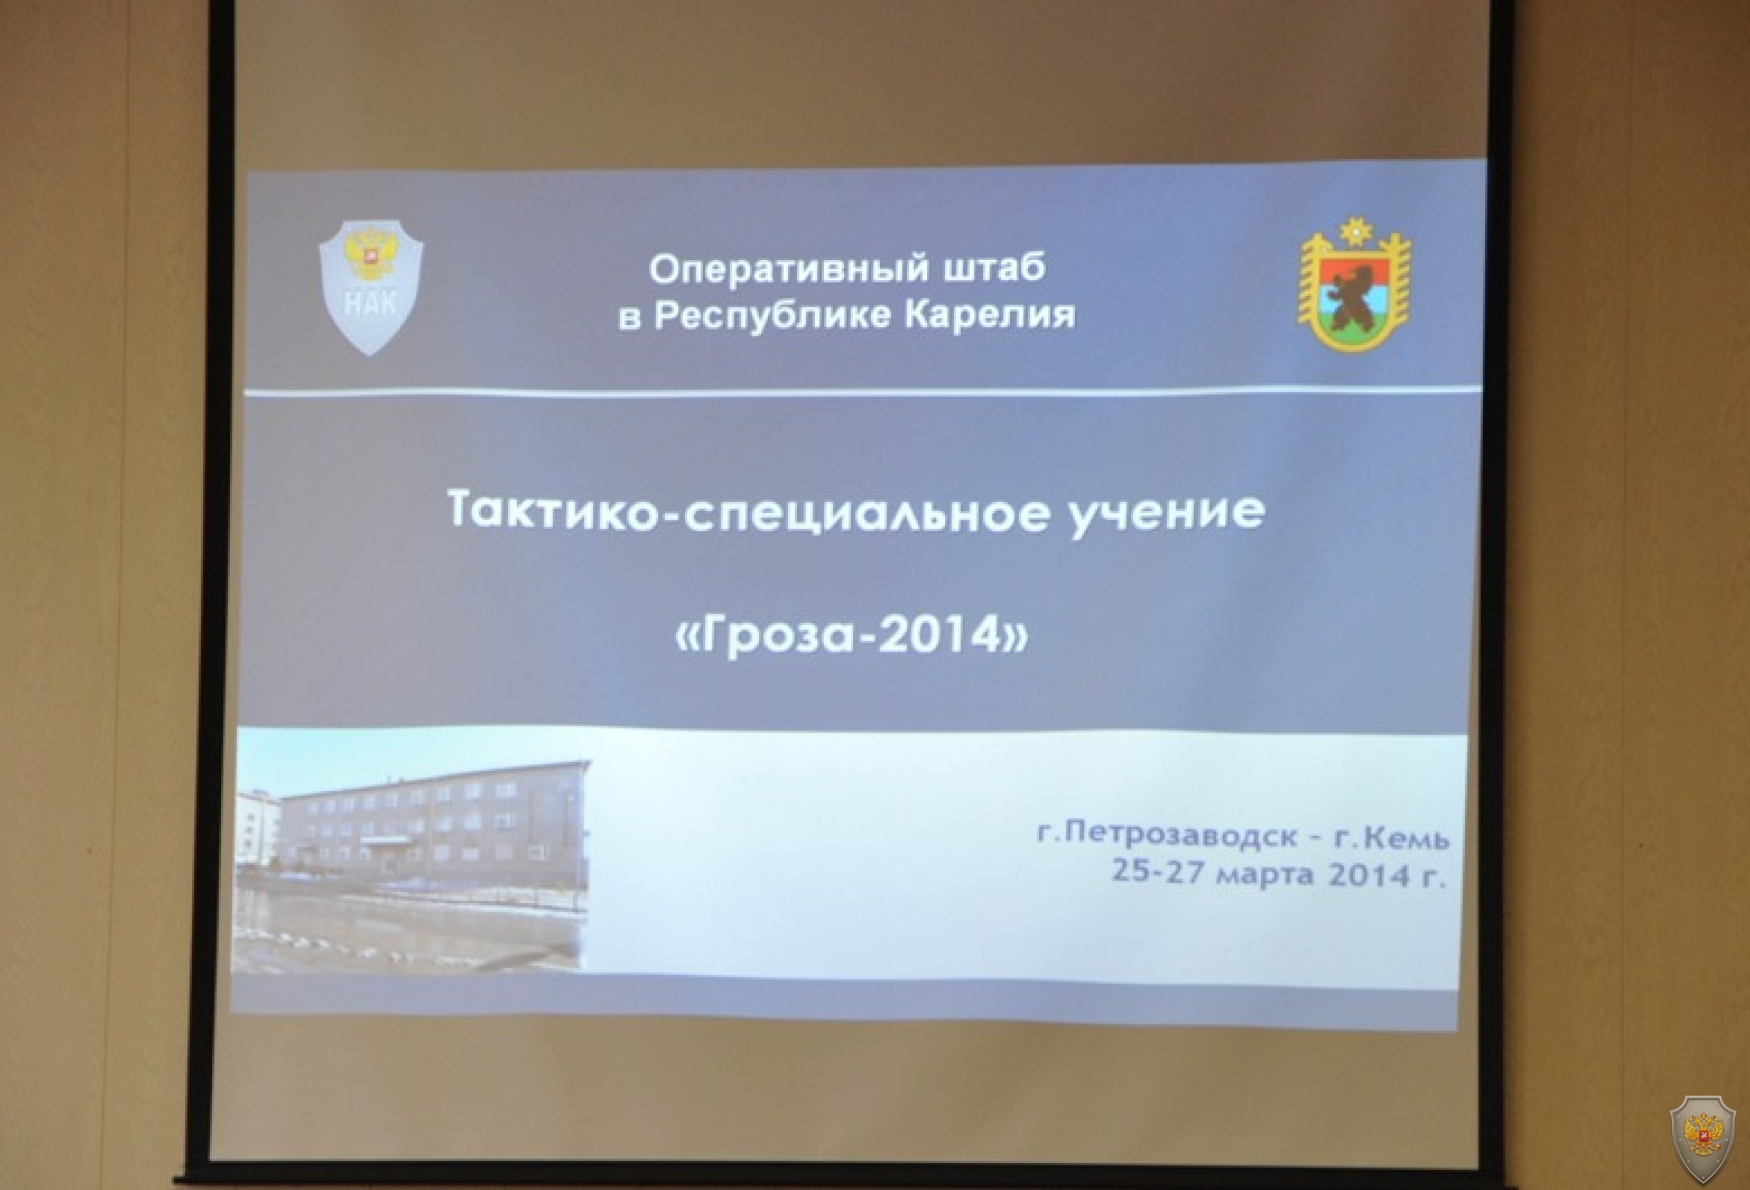 27 марта 2014 года проведено учение по пресечению террористического акта на объекте органов власти.